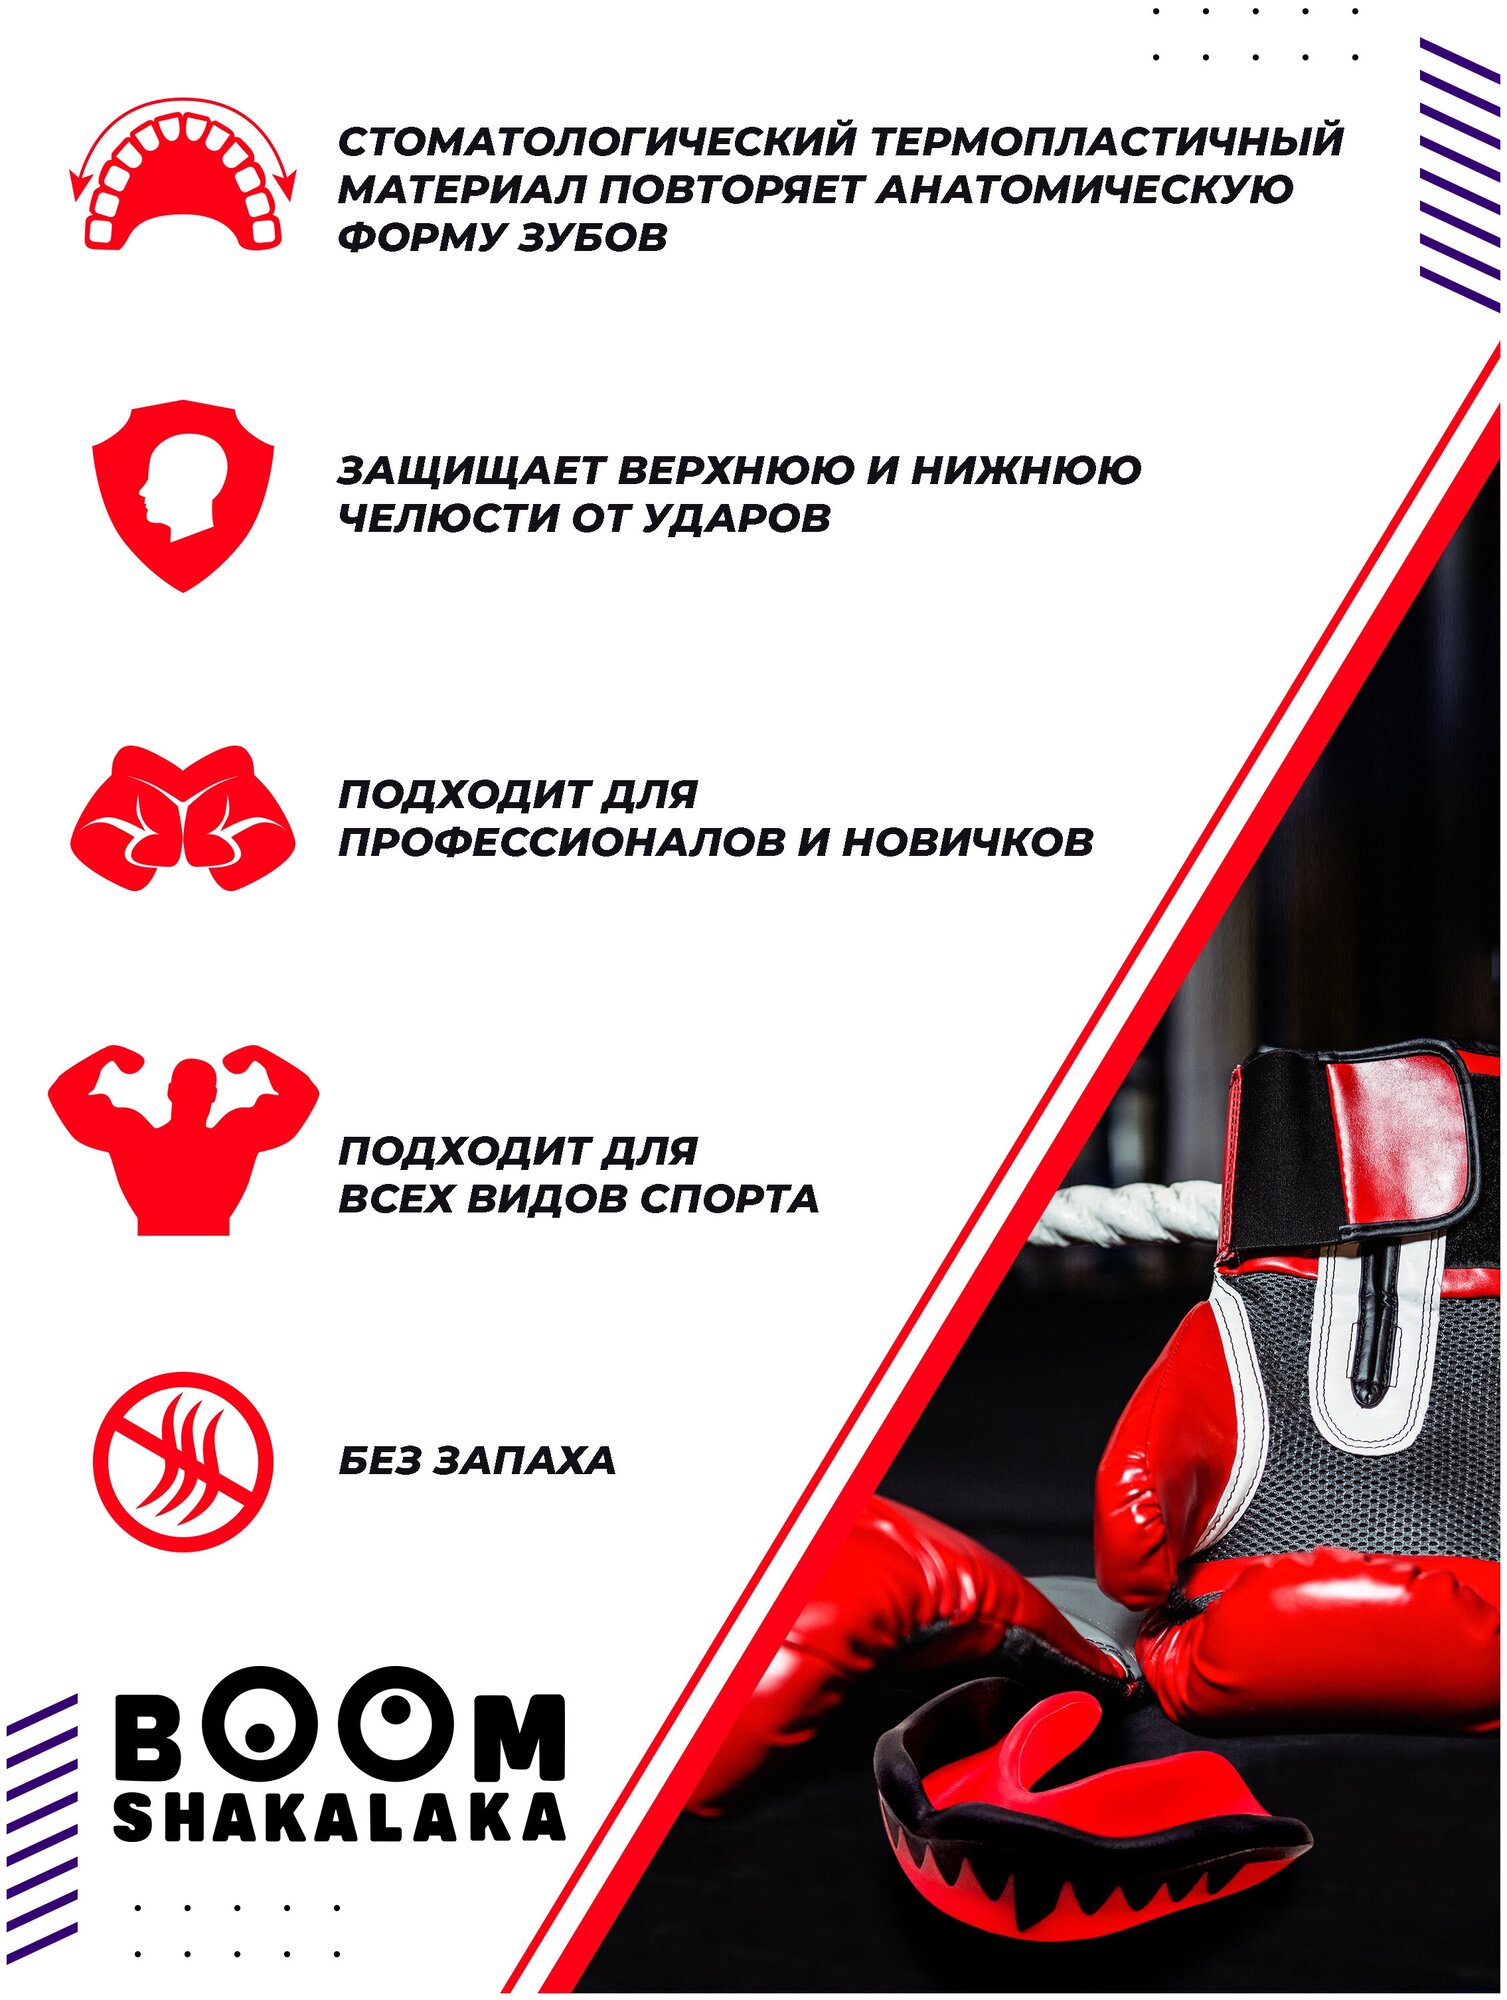 Капа боксерская детская Boomshakalaka одночелюстная, цвет черно-красный, с футляром, для бокса, MMA, рукопашного боя, хоккея, американского футбола